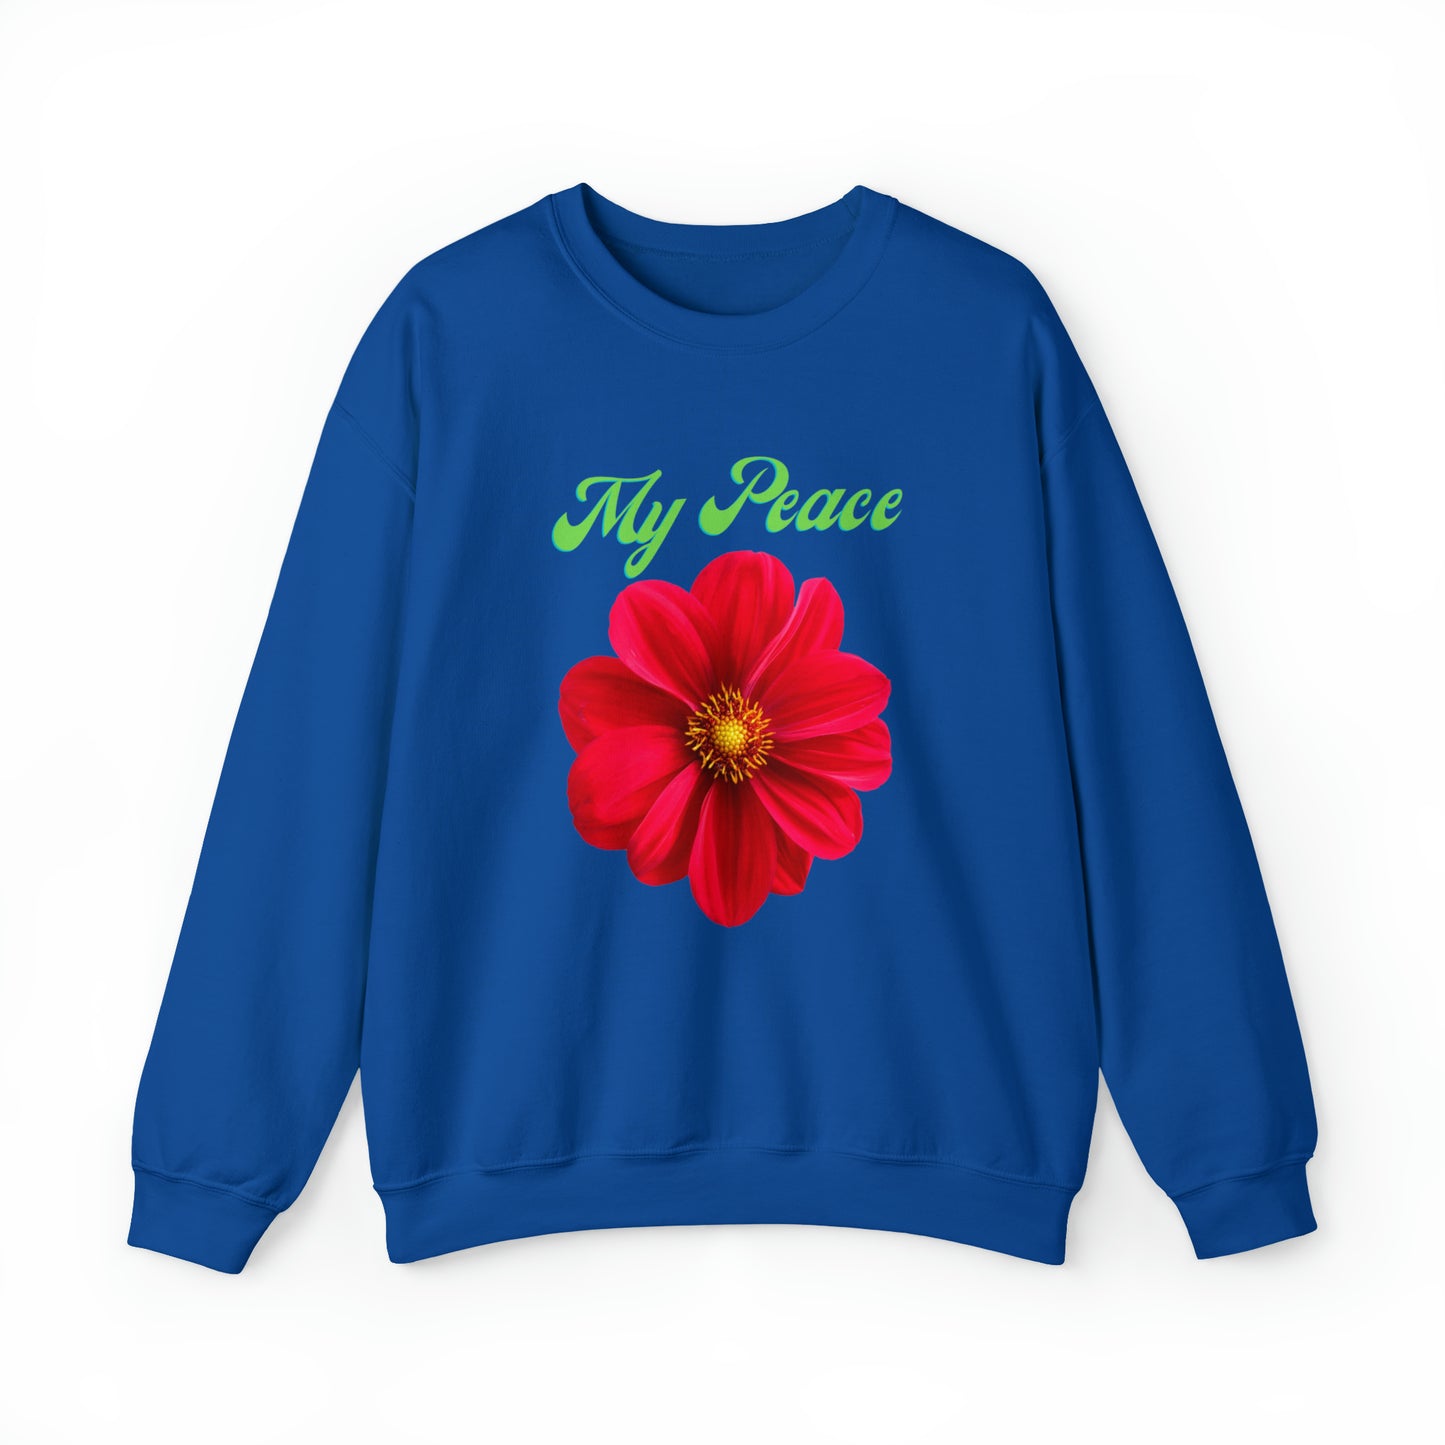 Red Flower design Statement sweatshirt Gift